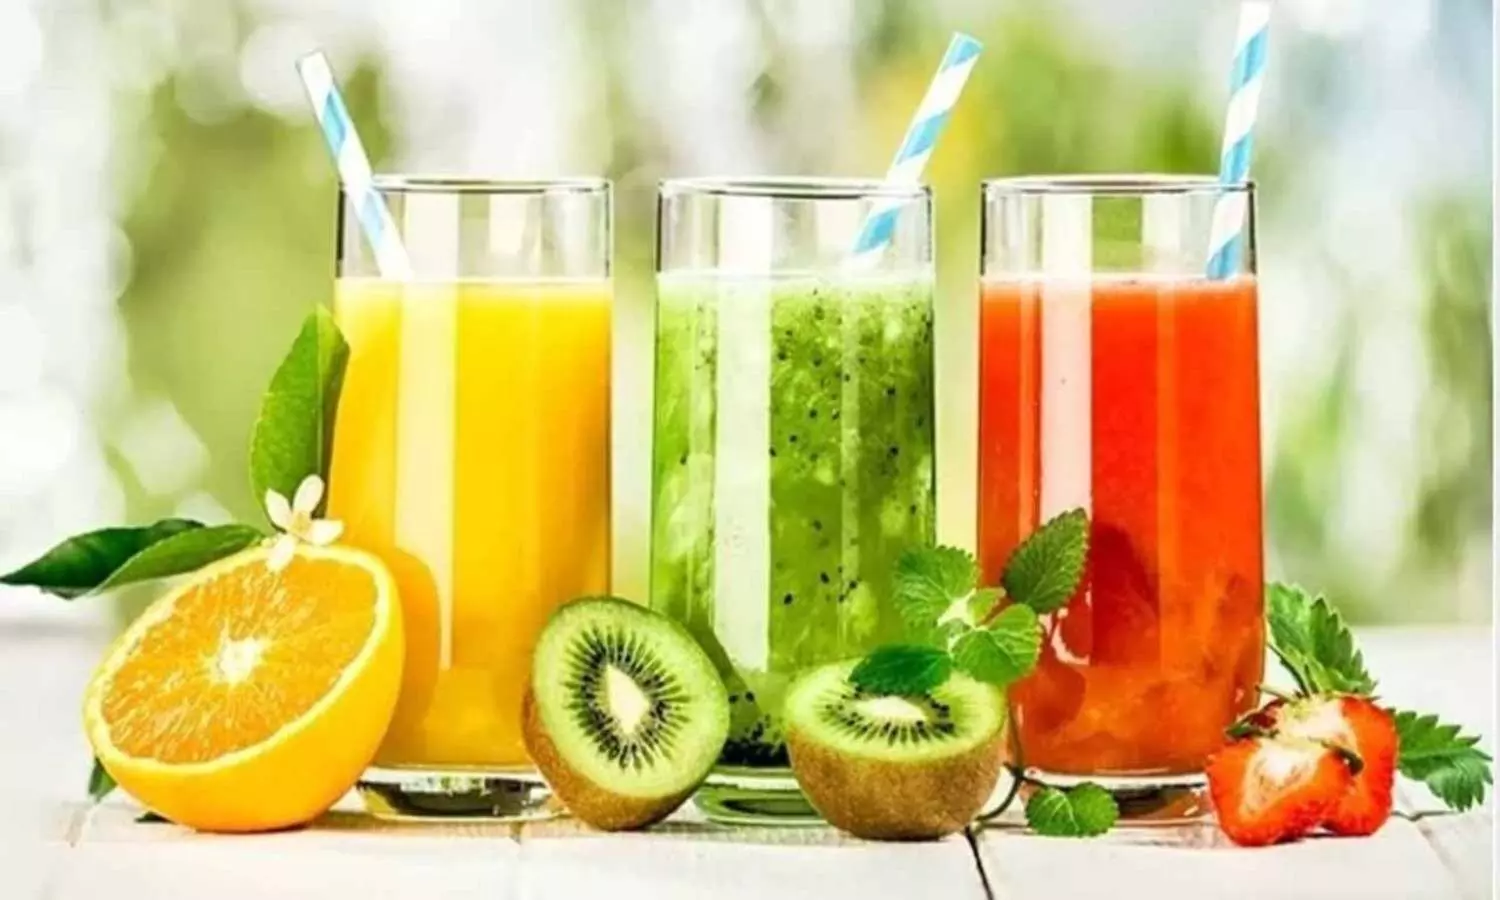 Vegetable juice benefits